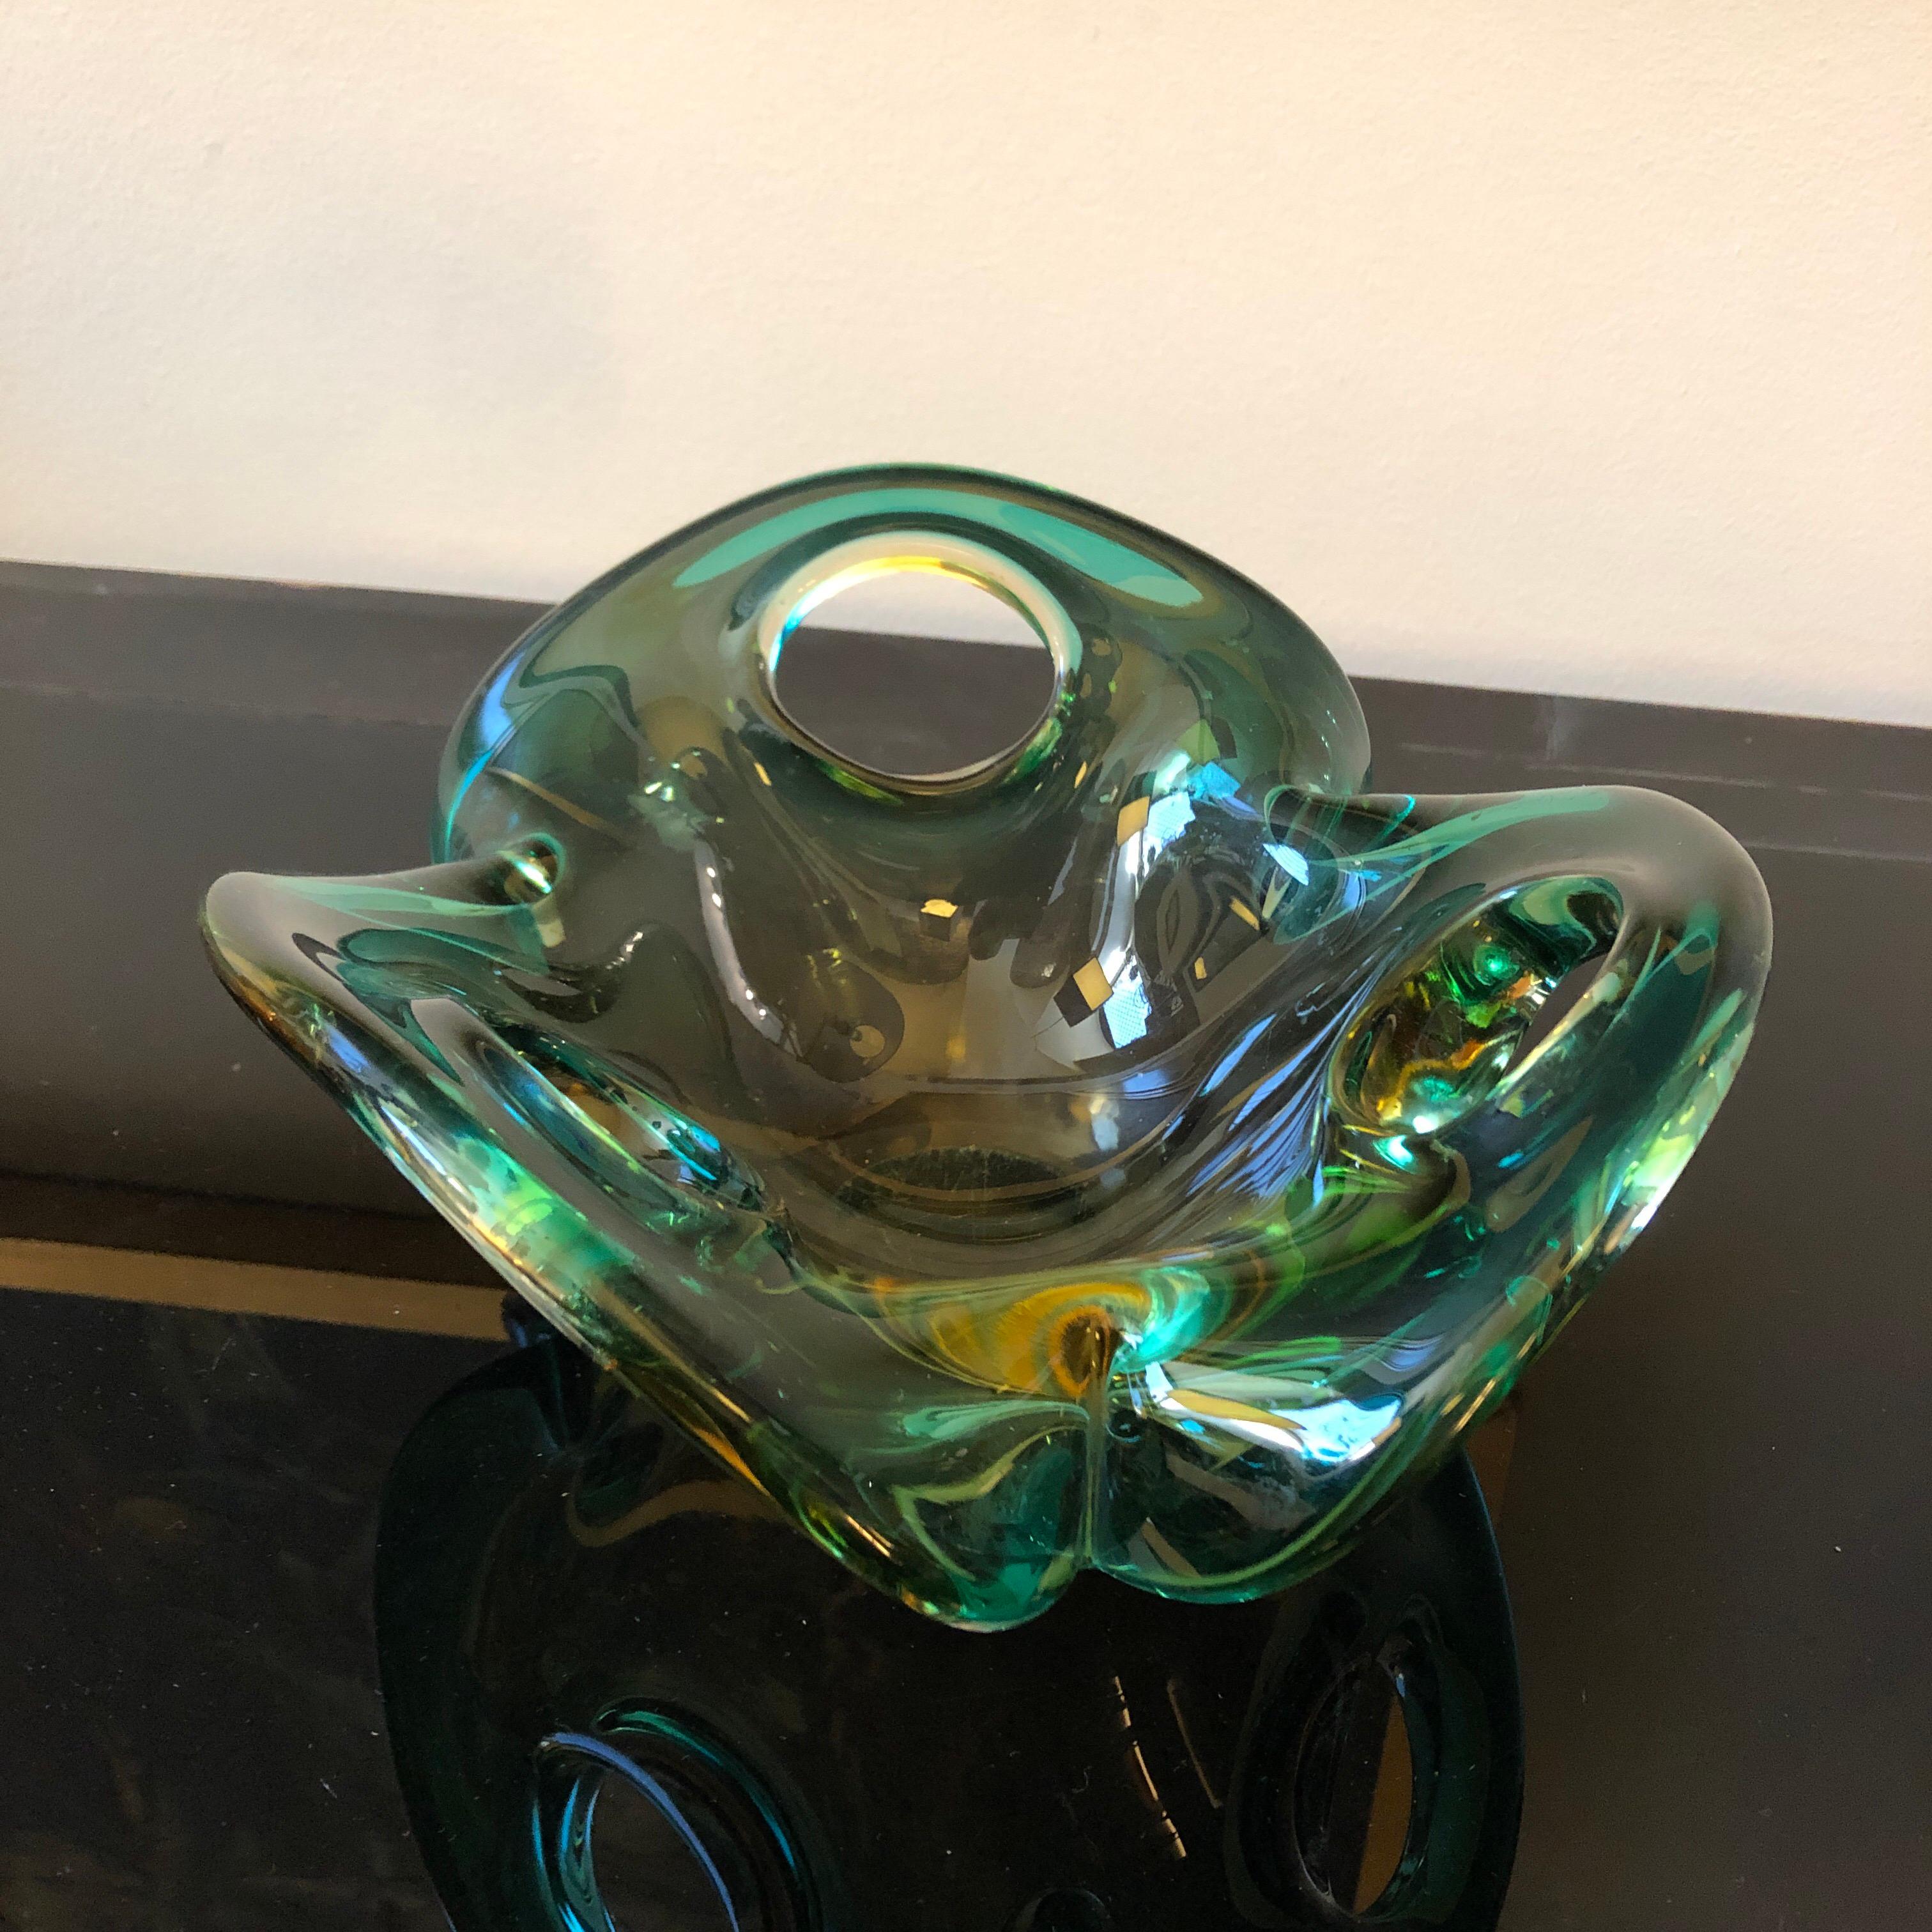 Die Murano-Glasschale von Seguso aus den 1970er Jahren ist ein beeindruckendes Beispiel für italienische Glasmacherkunst und die ikonische Sommerso-Technik. Diese von der renommierten Glasmanufaktur Seguso entworfene Schale fängt mit ihren